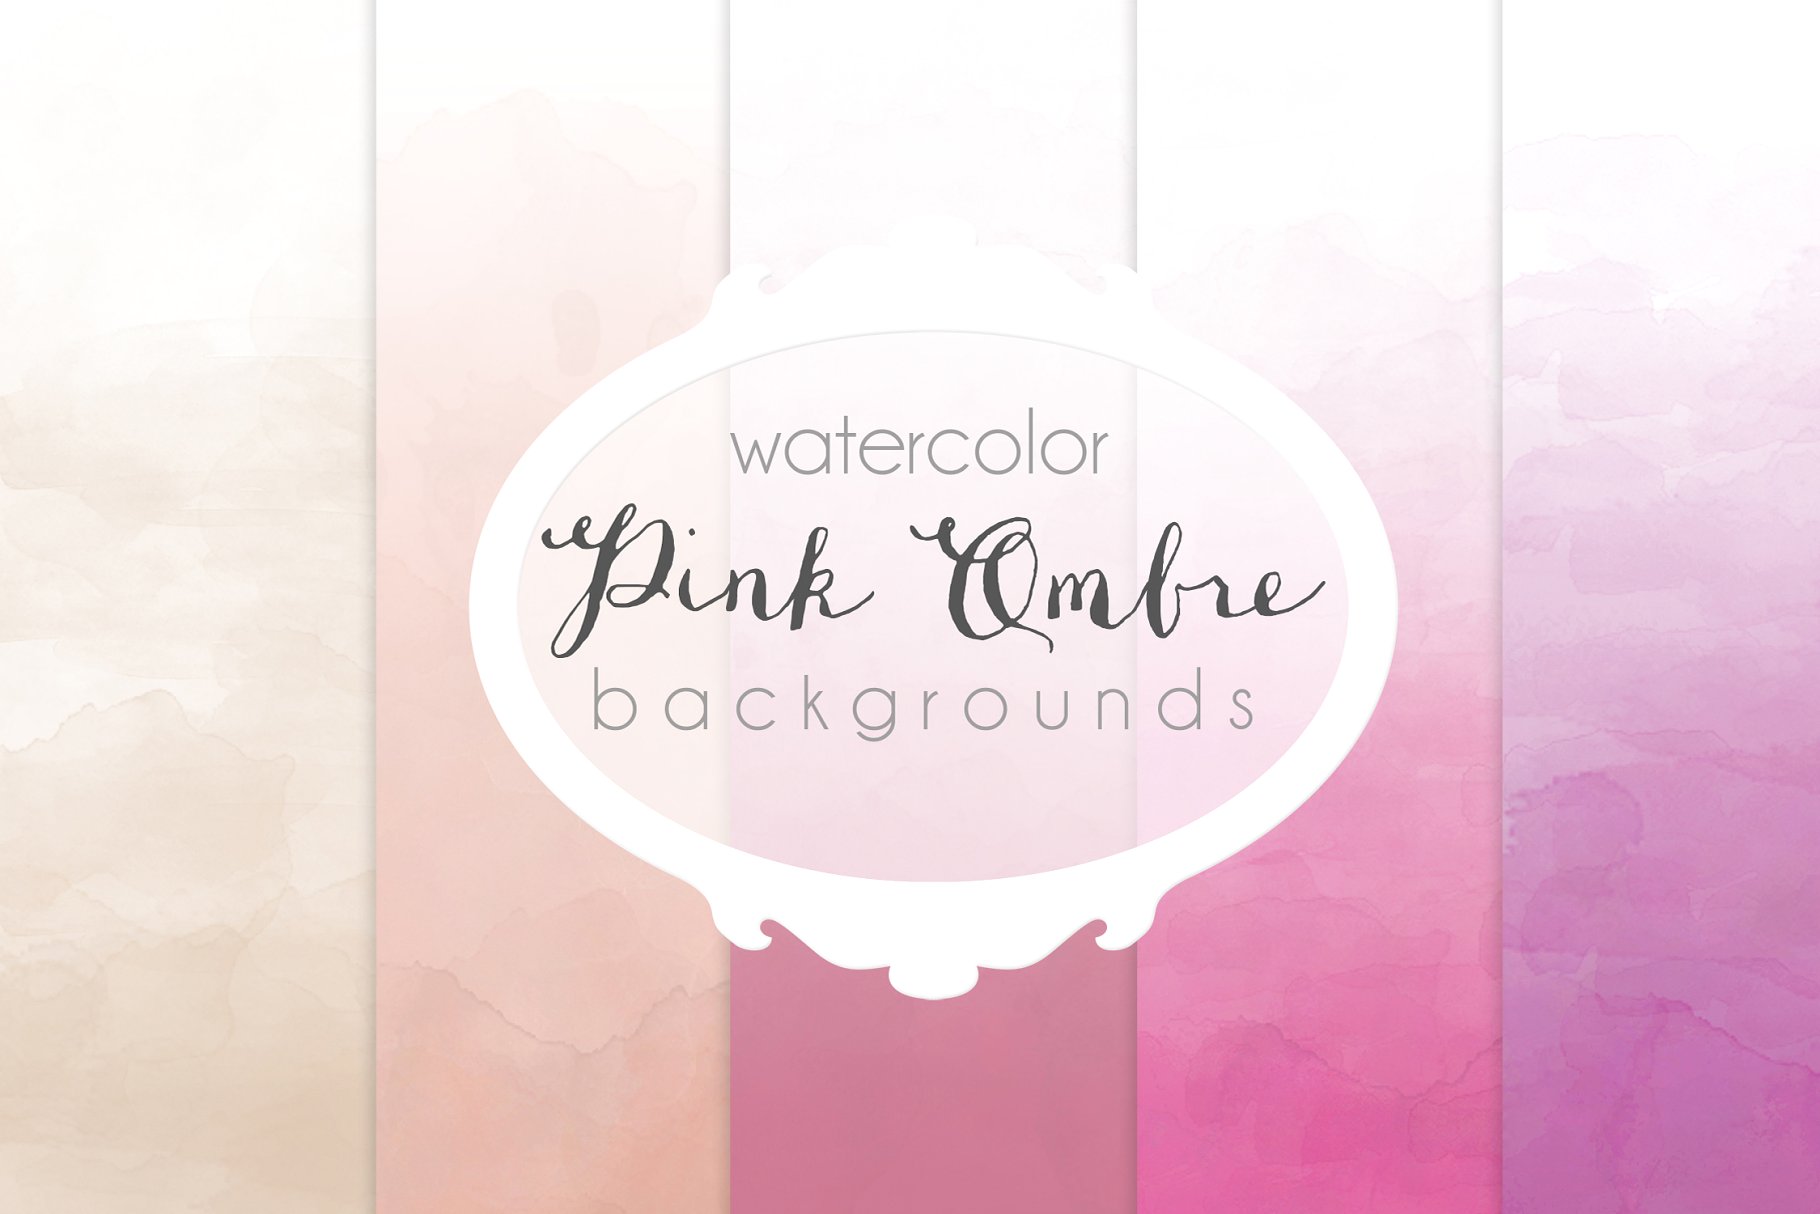 深浅条纹水彩背景纹理 Pink Ombre watercolor backgrounds插图